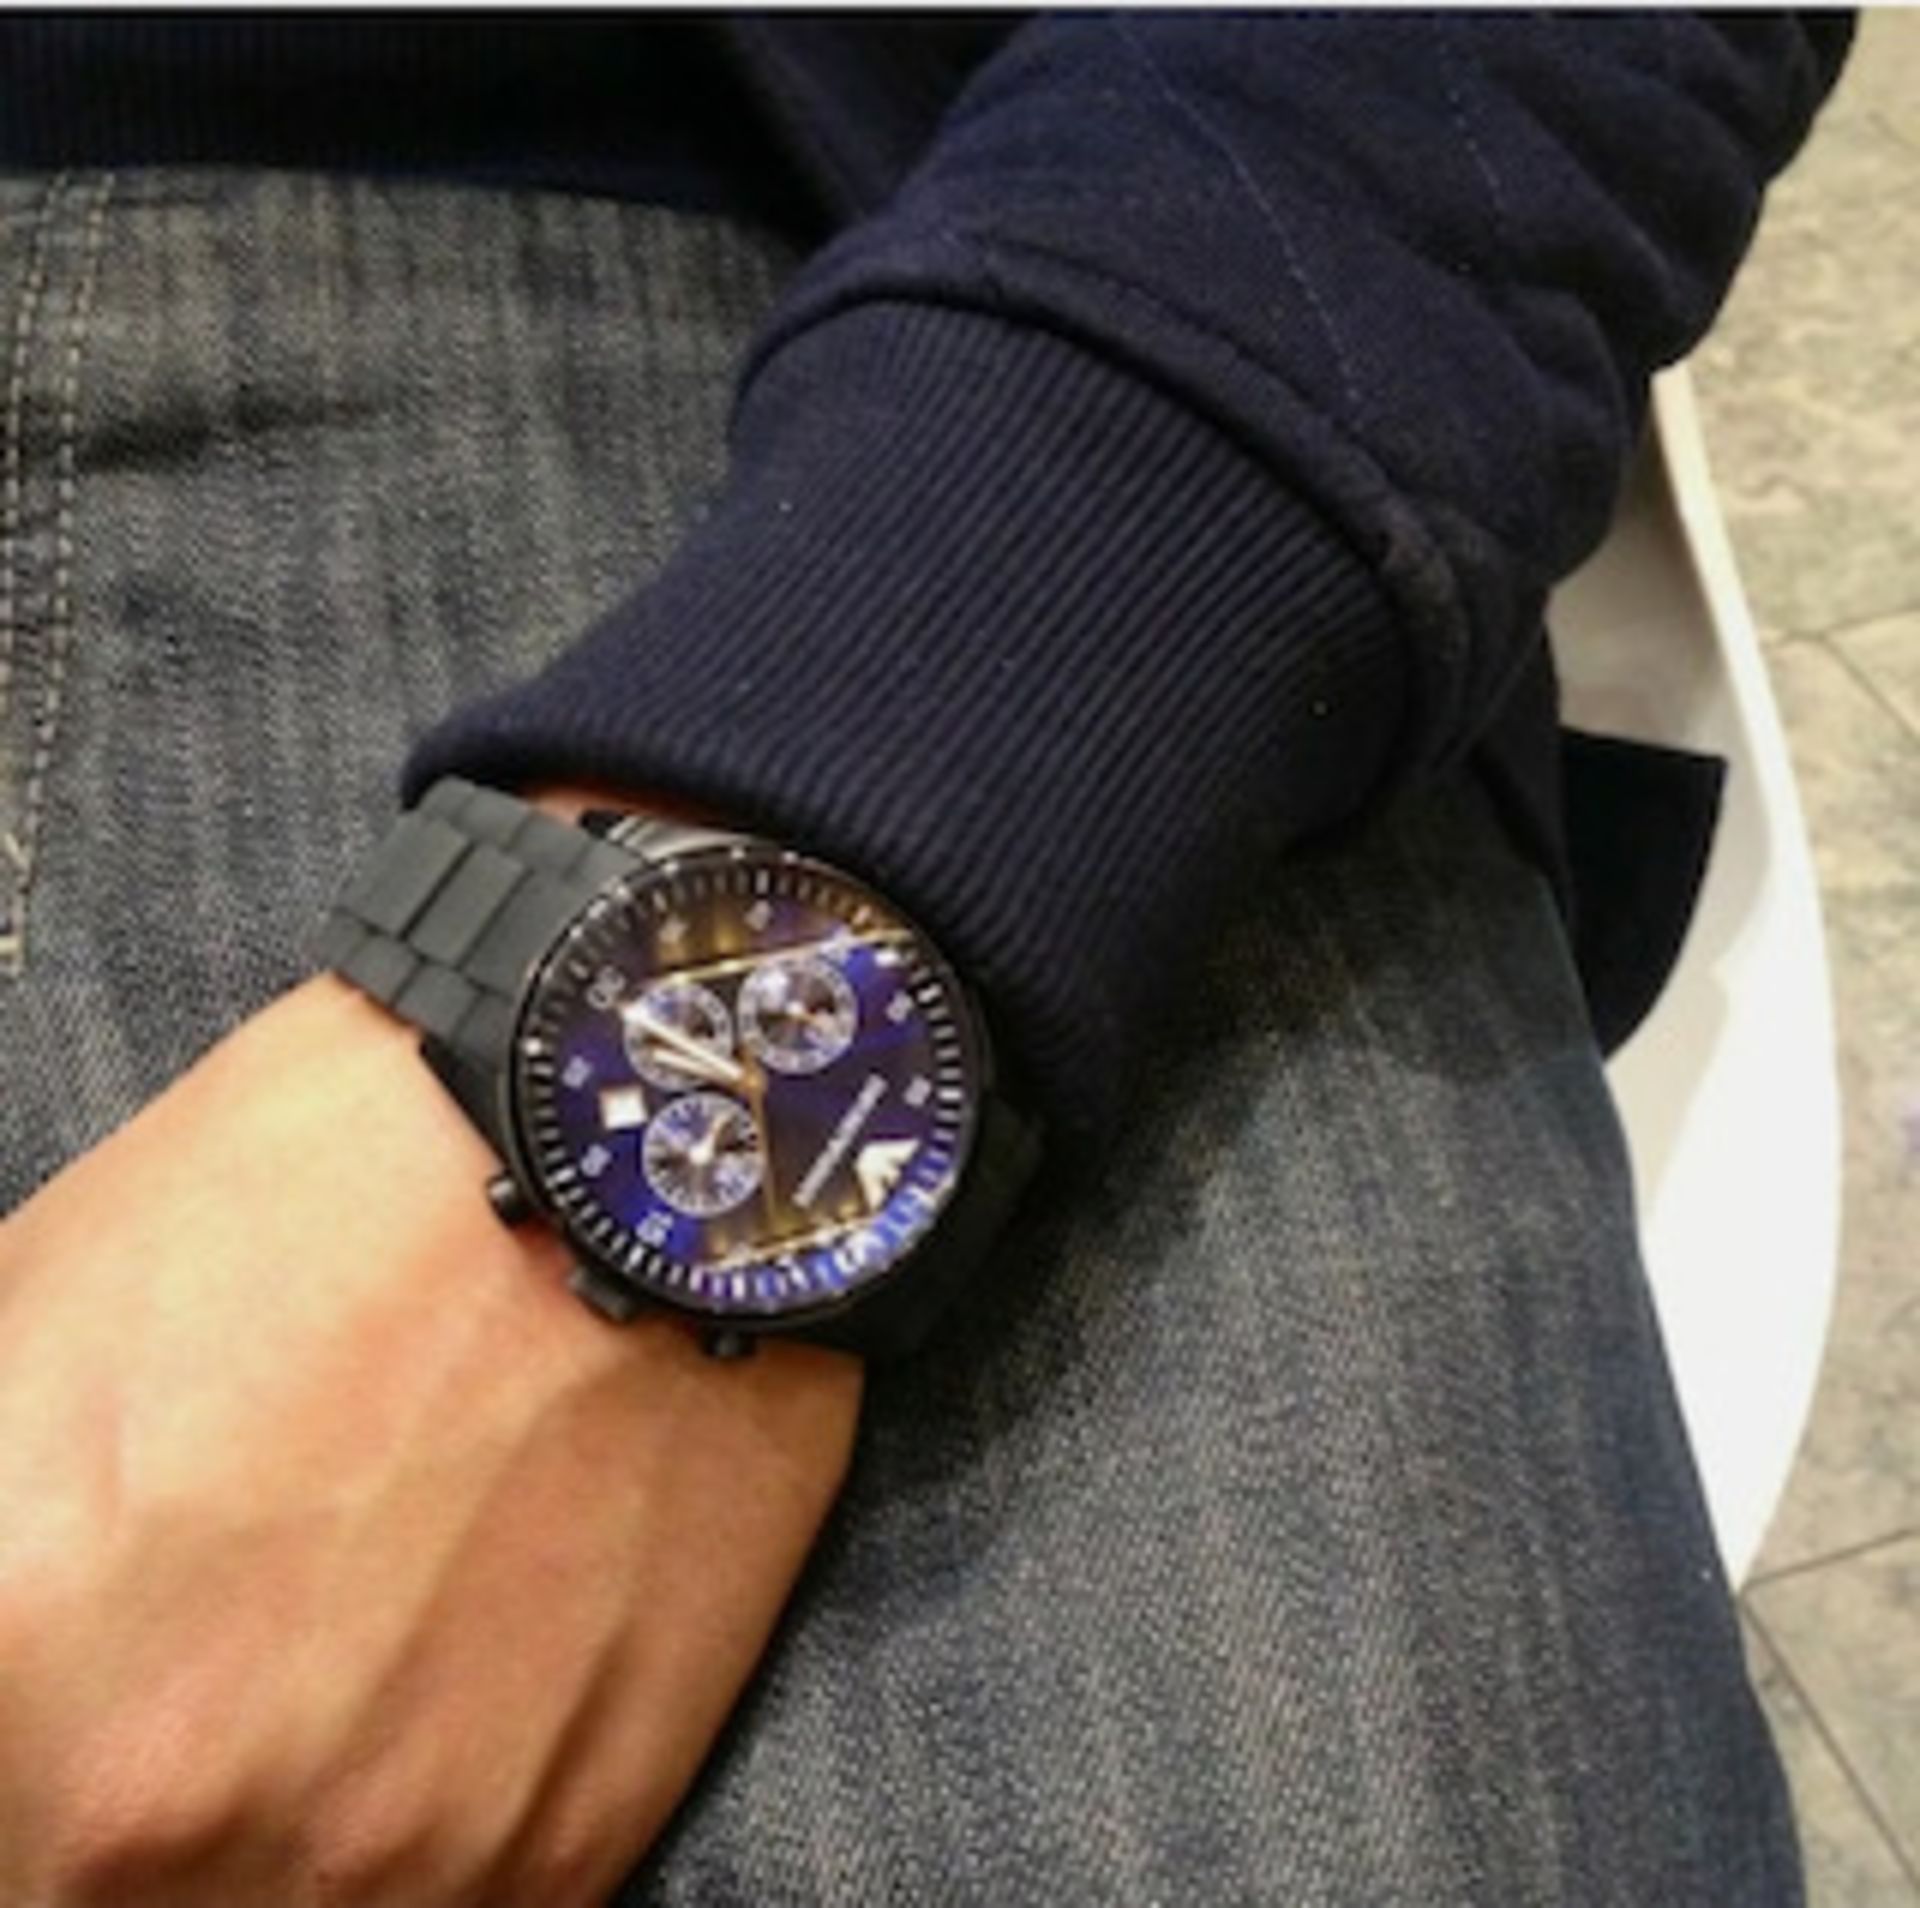 Emporio Armani AR5921 Men's Sportivo Blue Dial Quartz Chronograph Watch - Image 2 of 7